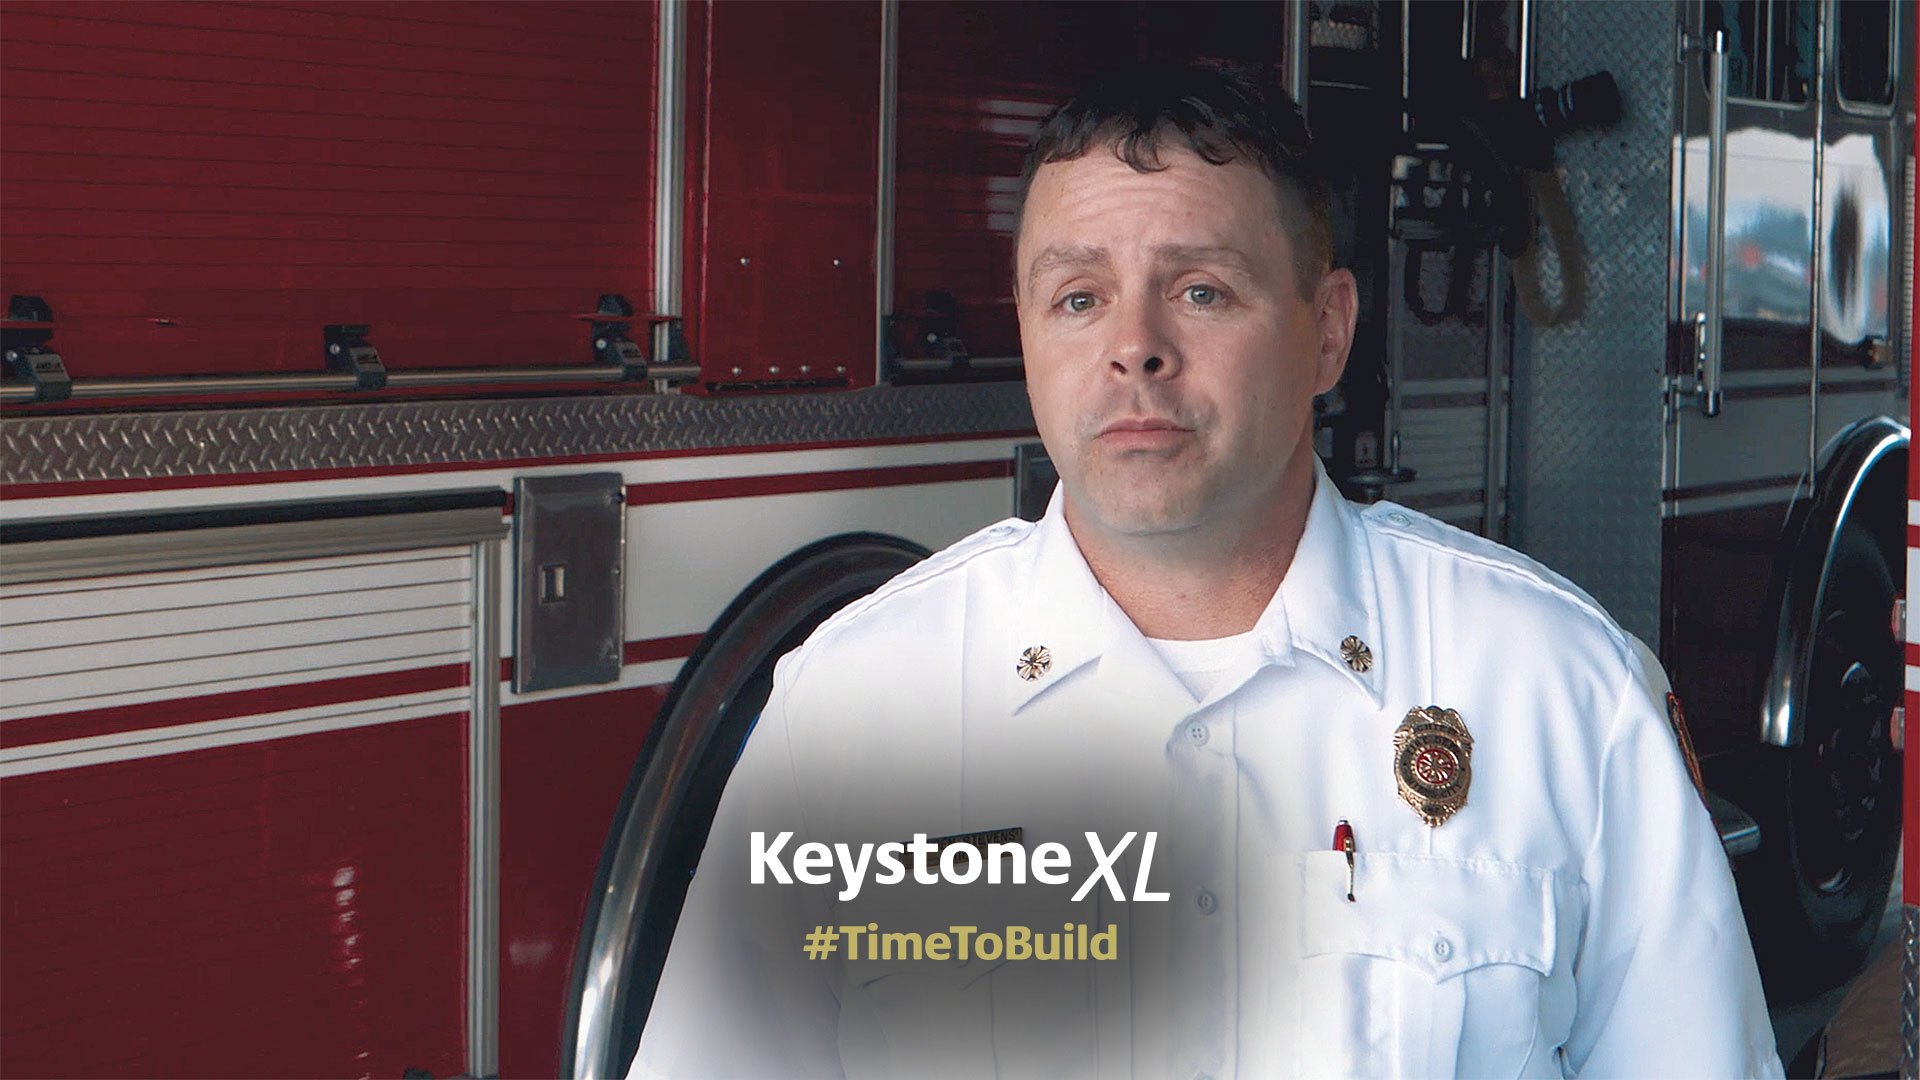 Keystone XL - Time to Build - Fire Chief Branden Stevens, Miles City, Montana